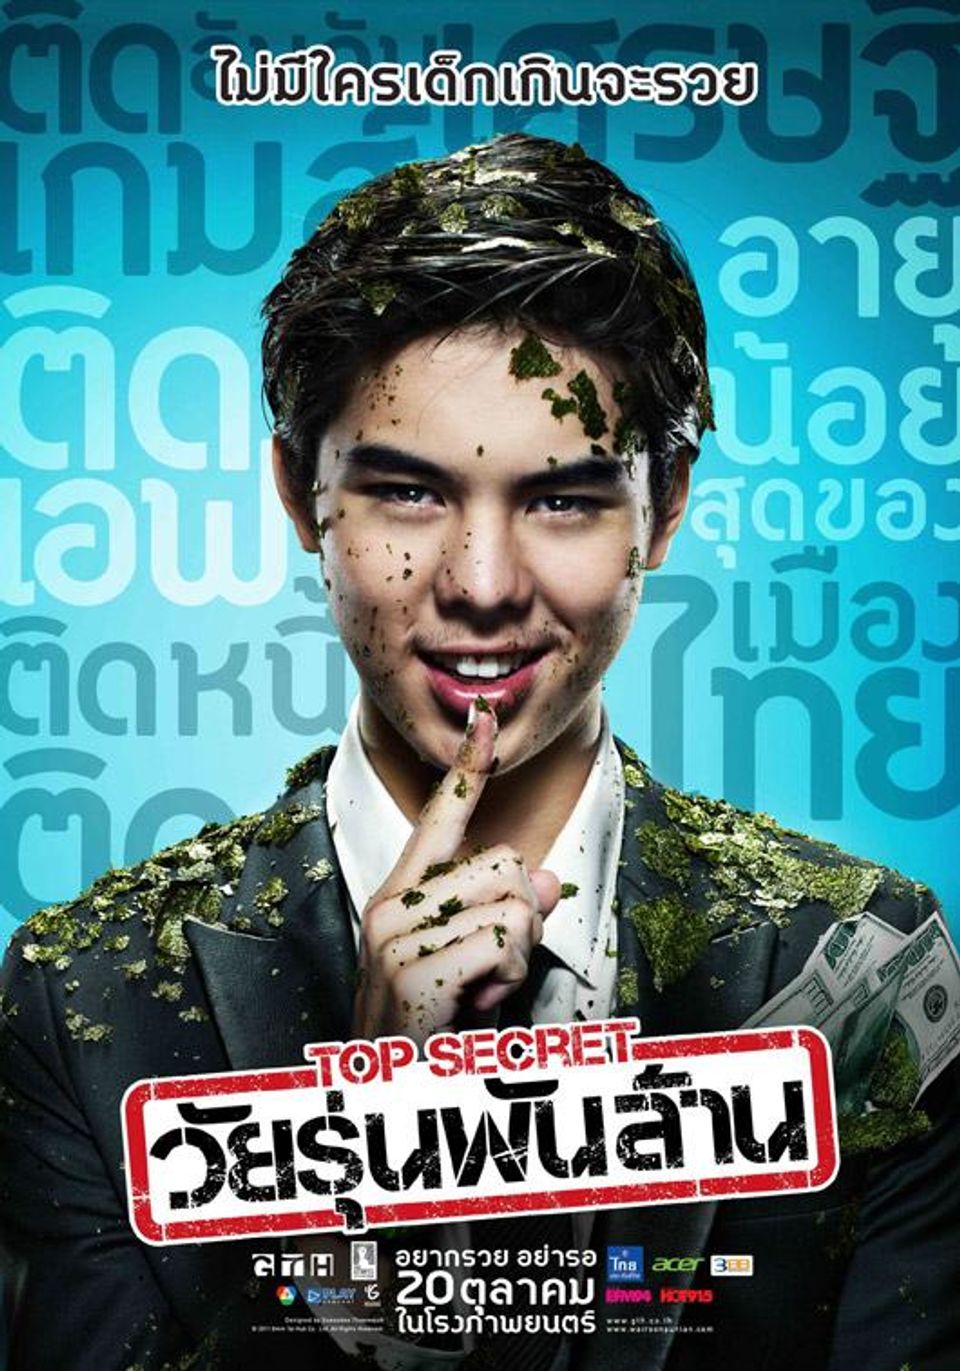 ภาพยนตร์ไทย “TOP SECRET วัยรุ่นพันล้าน”